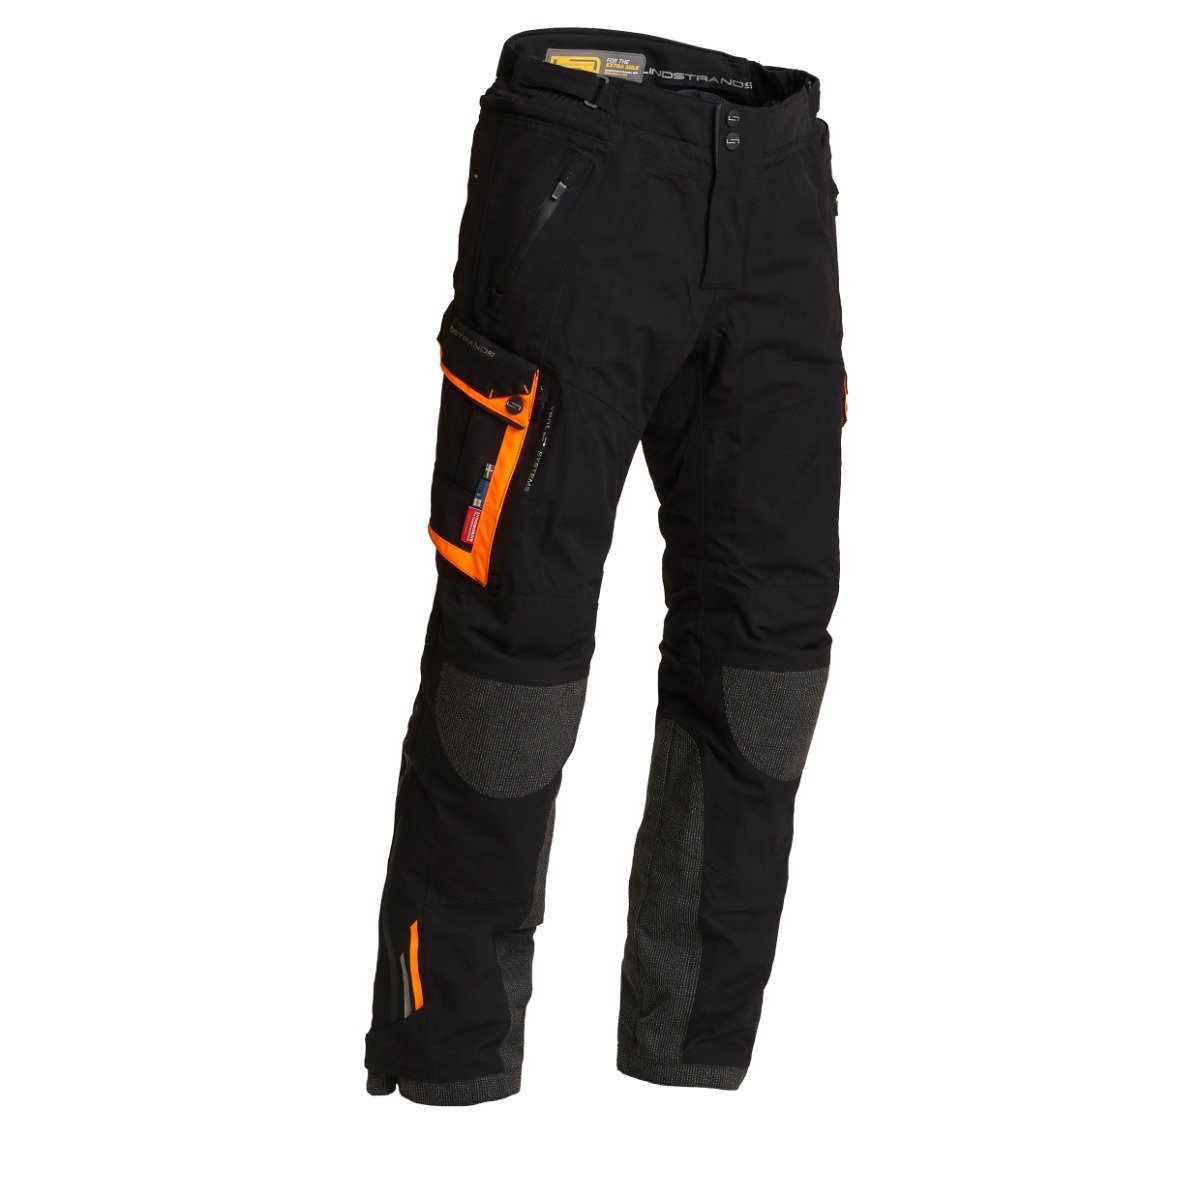 Image of Lindstrands Textile Pants Sunne Black Orange Size 52 ID 6438235187717